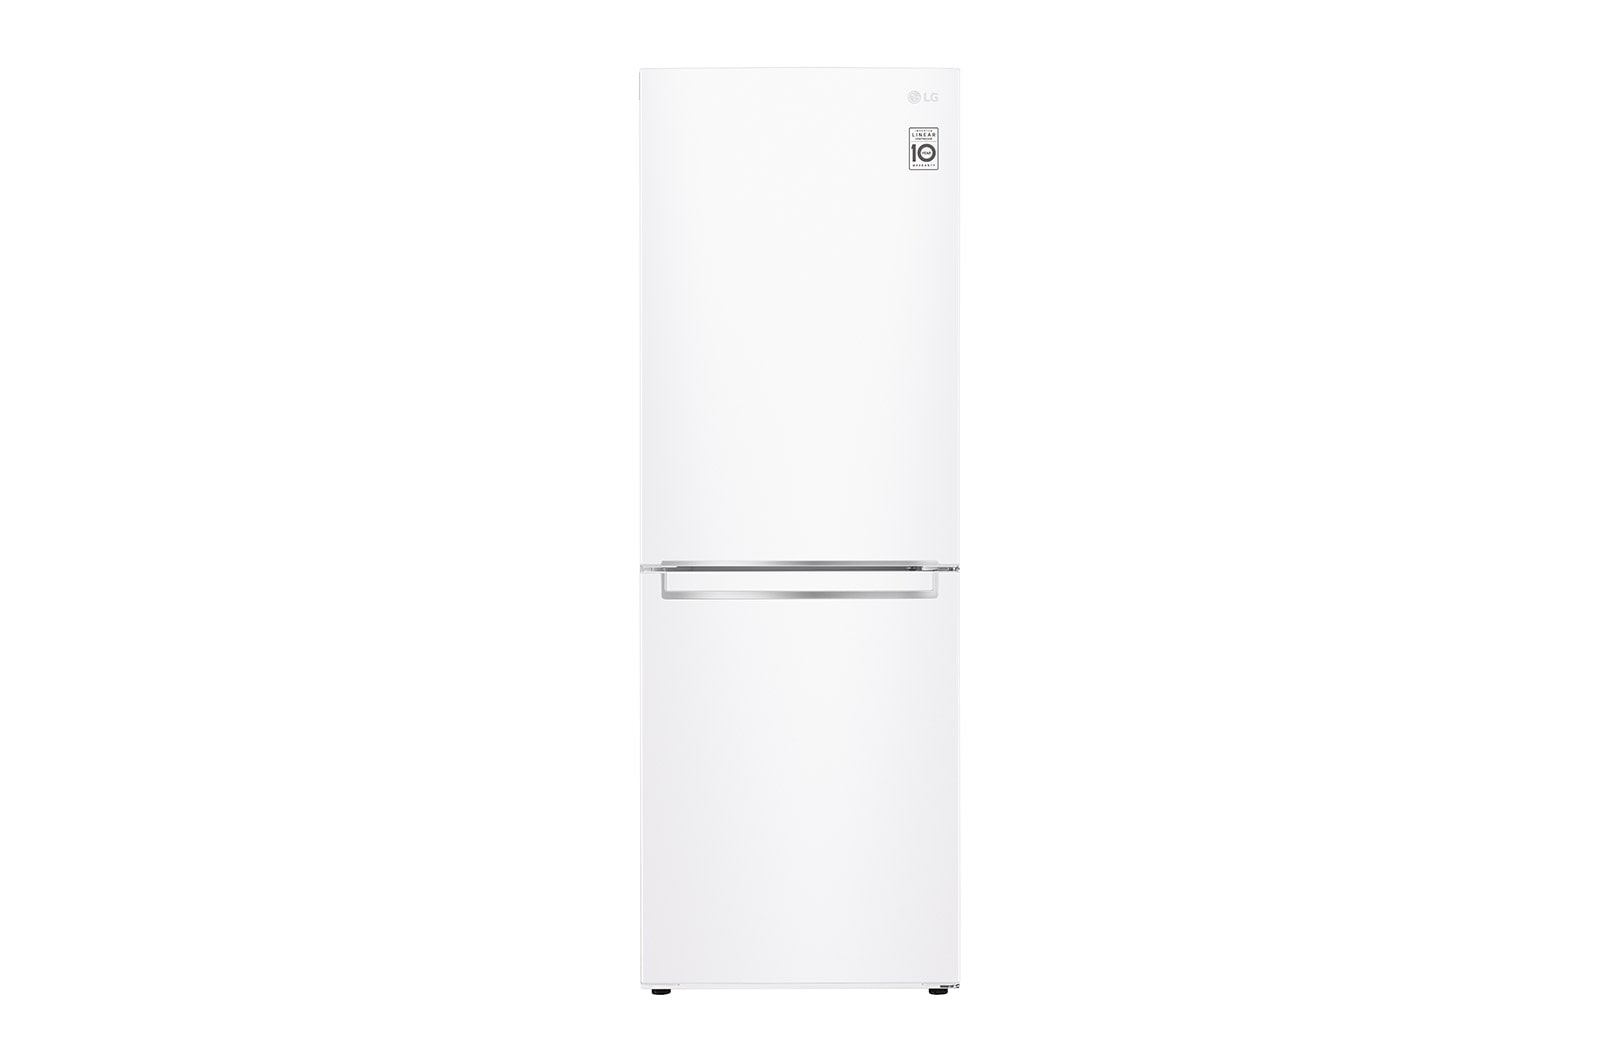 LG Réfrigérateur avec congélateur en bas de 24 po de large de 10,8 pi³, LRDNC1004W